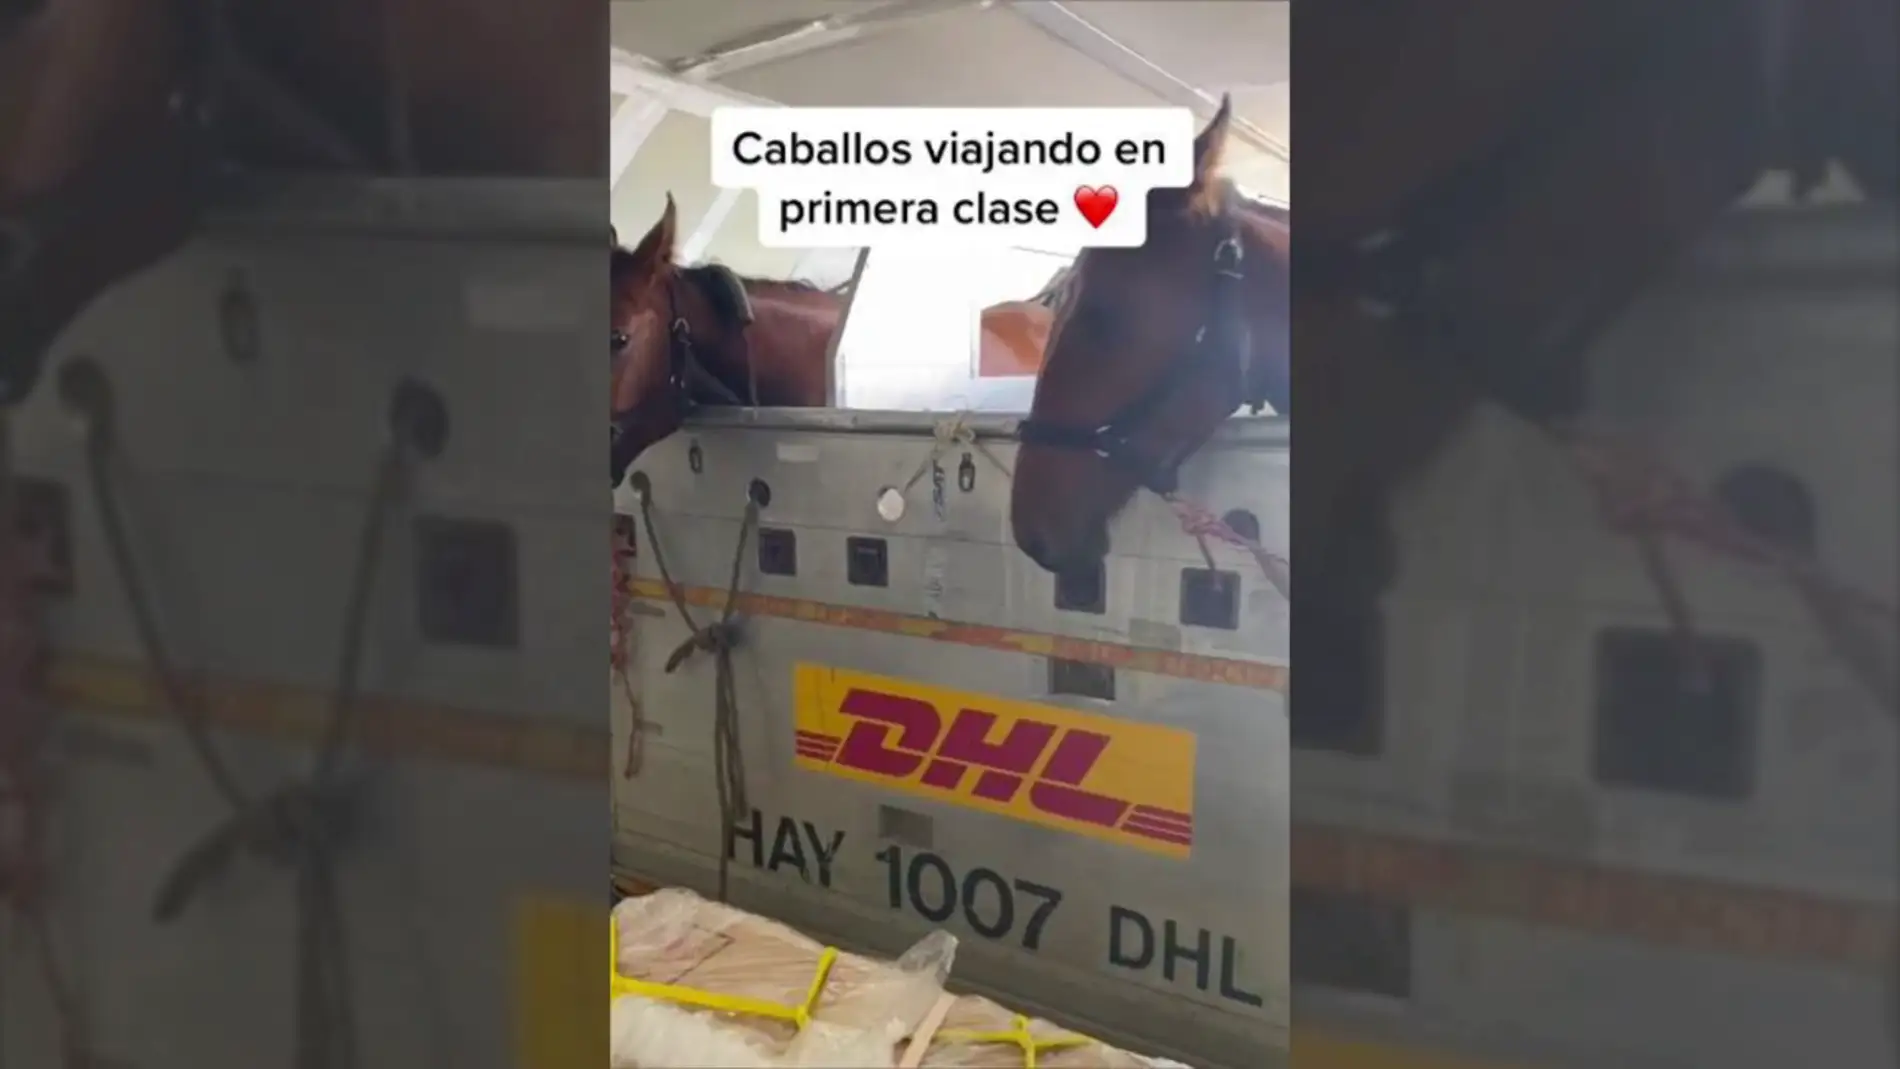 Una mujer muestra cómo viajan los caballos en un avión: "Viajan en primera clase"